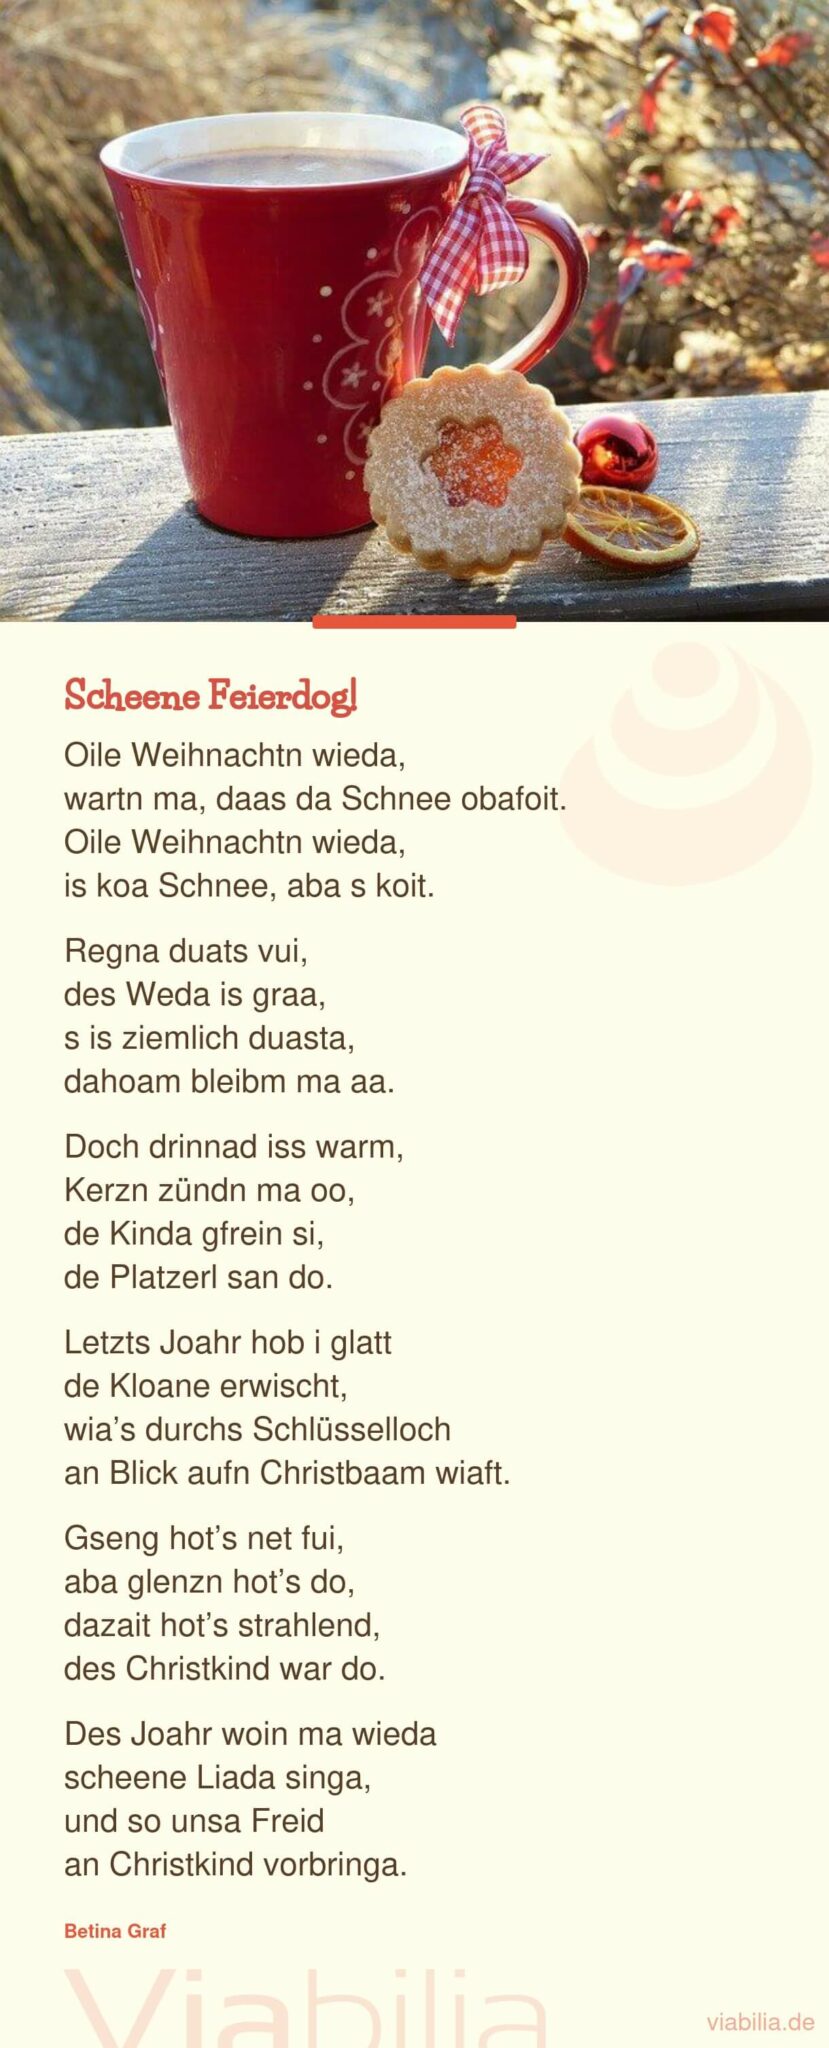 Weihnachtsgedicht in bayrischer Mundart: Scheene Feierdog